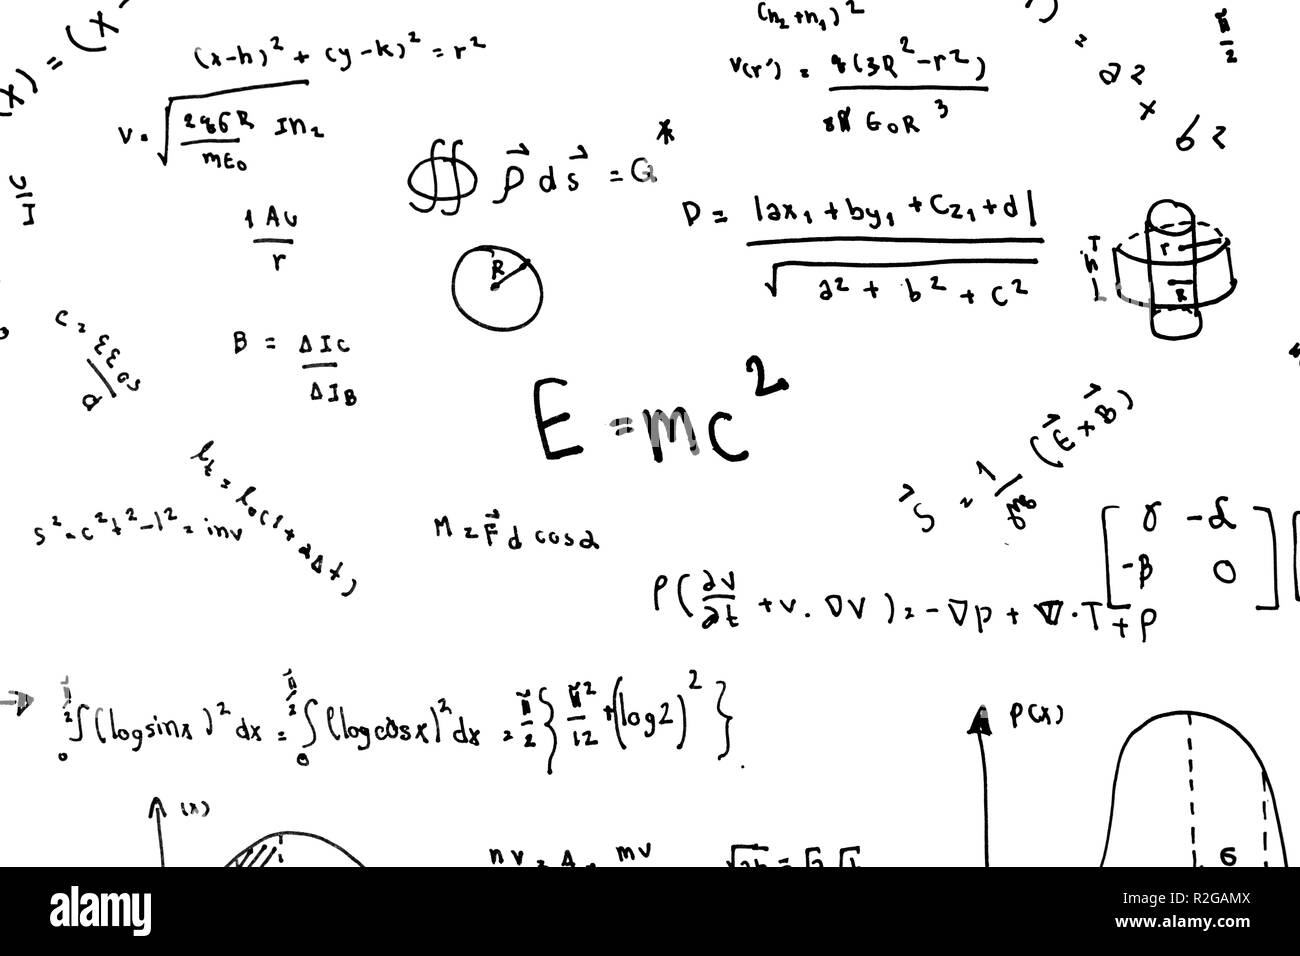 Le equazioni matematiche scrivere a mano le formule scientifiche e i calcoli in fisica e matematica sul libro bianco isolato su sfondo bianco Foto Stock